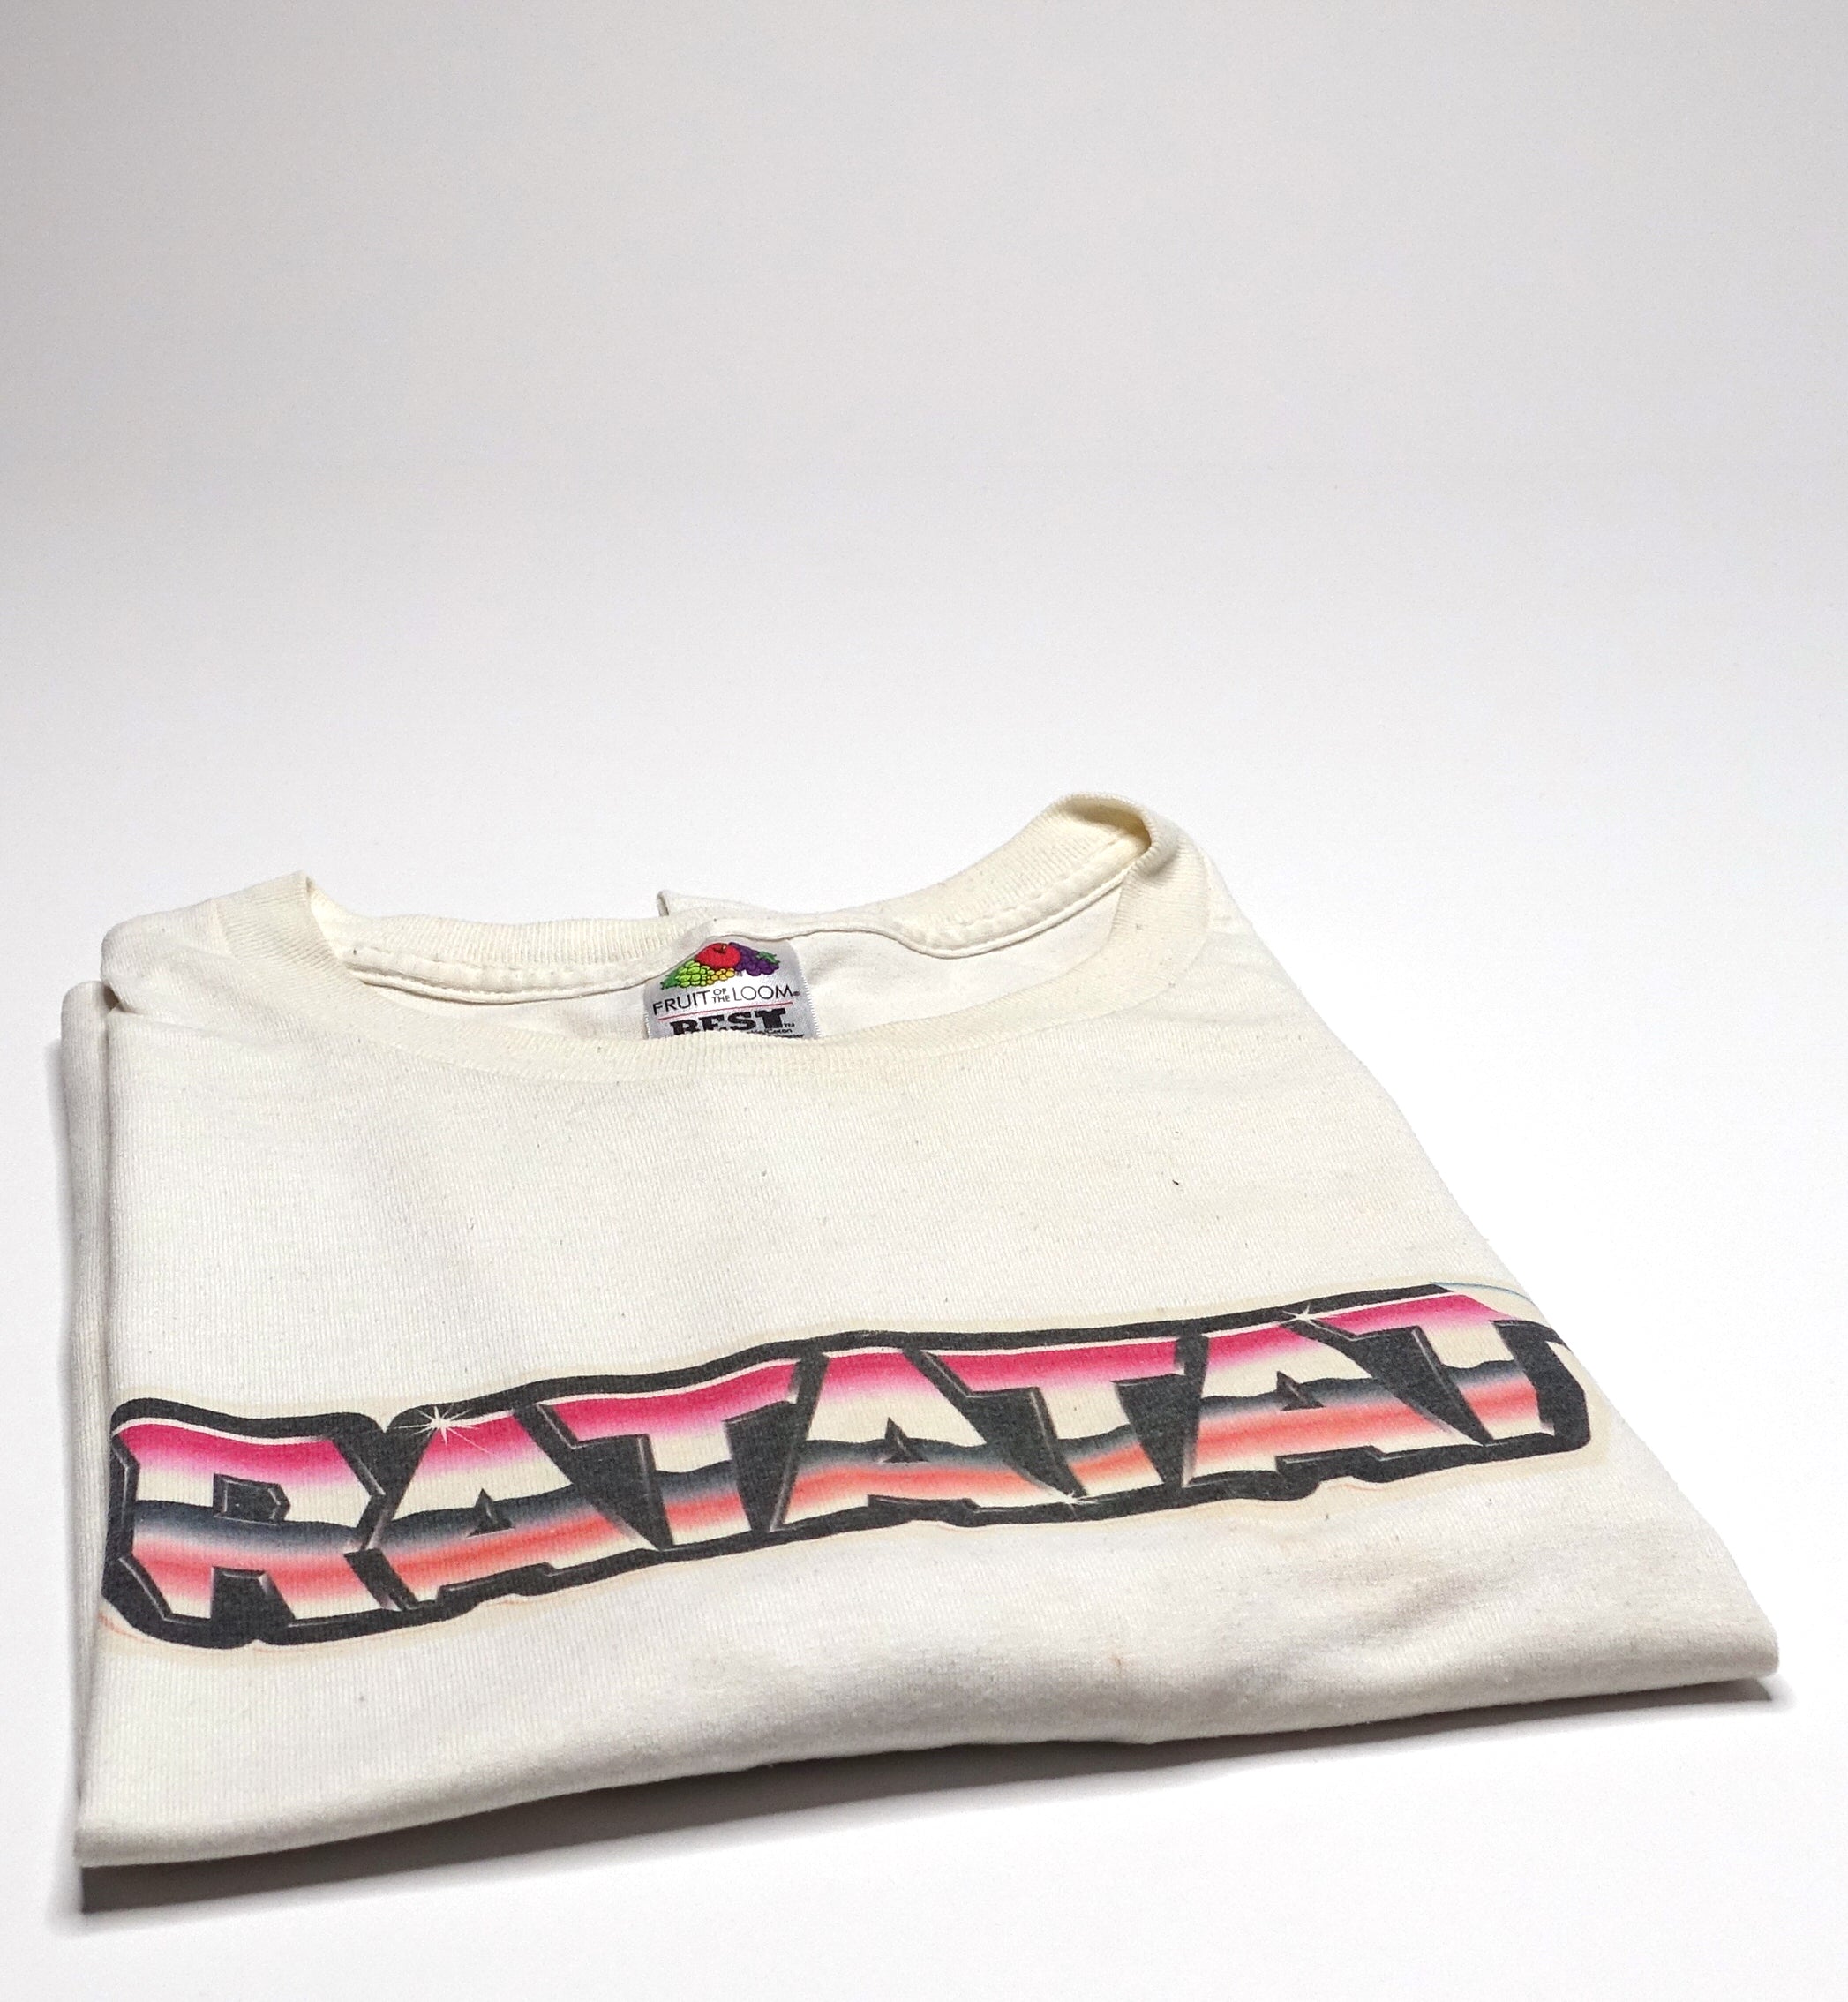 Ratatat ‎– LP3 Chrome Logo 2009 US Tour Shirt Size Large (White)